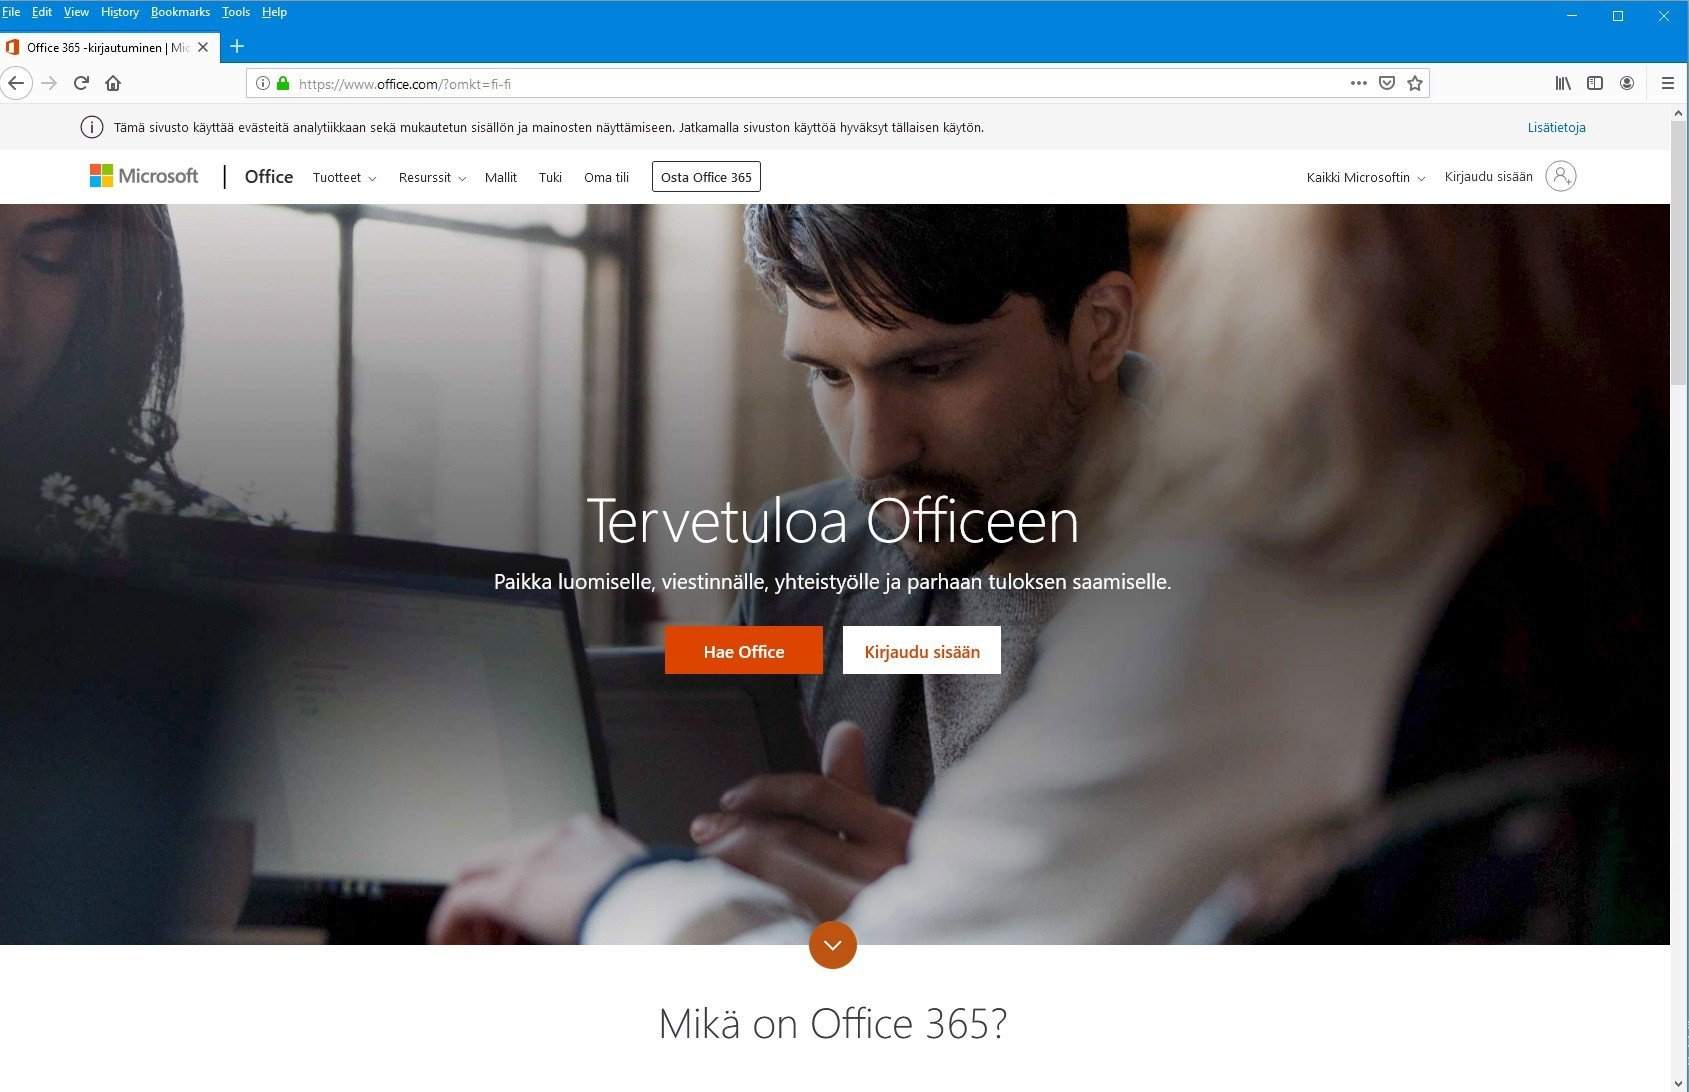 Tivi: Microsoft Office siirtyy historiaan | Verkkouutiset